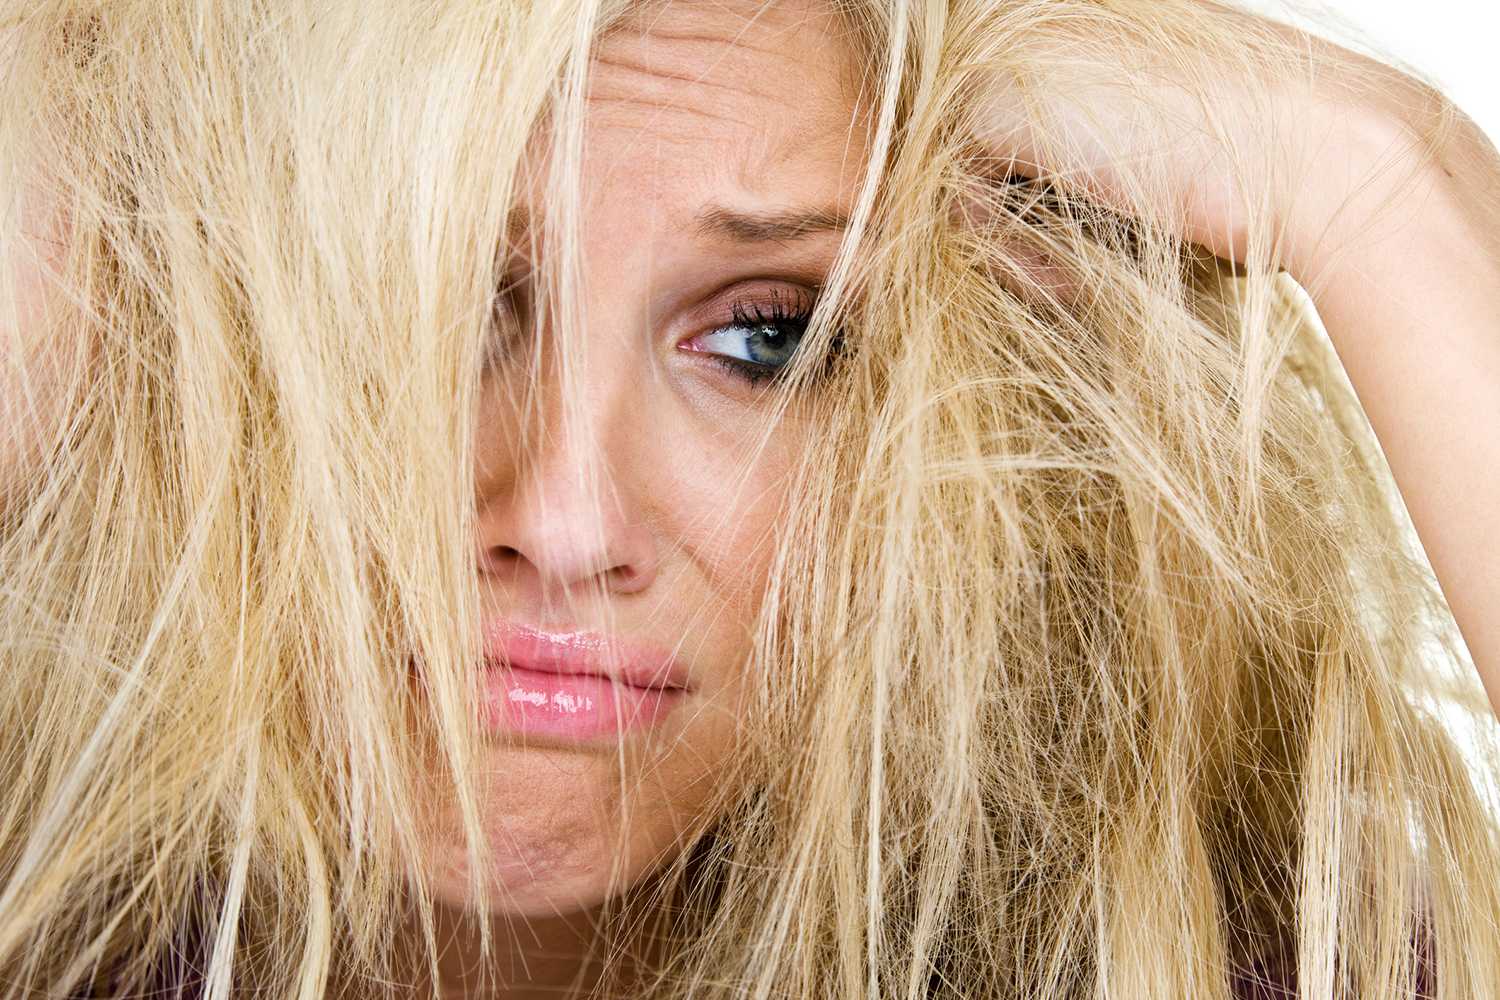 Уход за окрашенными волосами [10 правил] - советы профессионалов как ухаживать в домашних условиях и в салоне